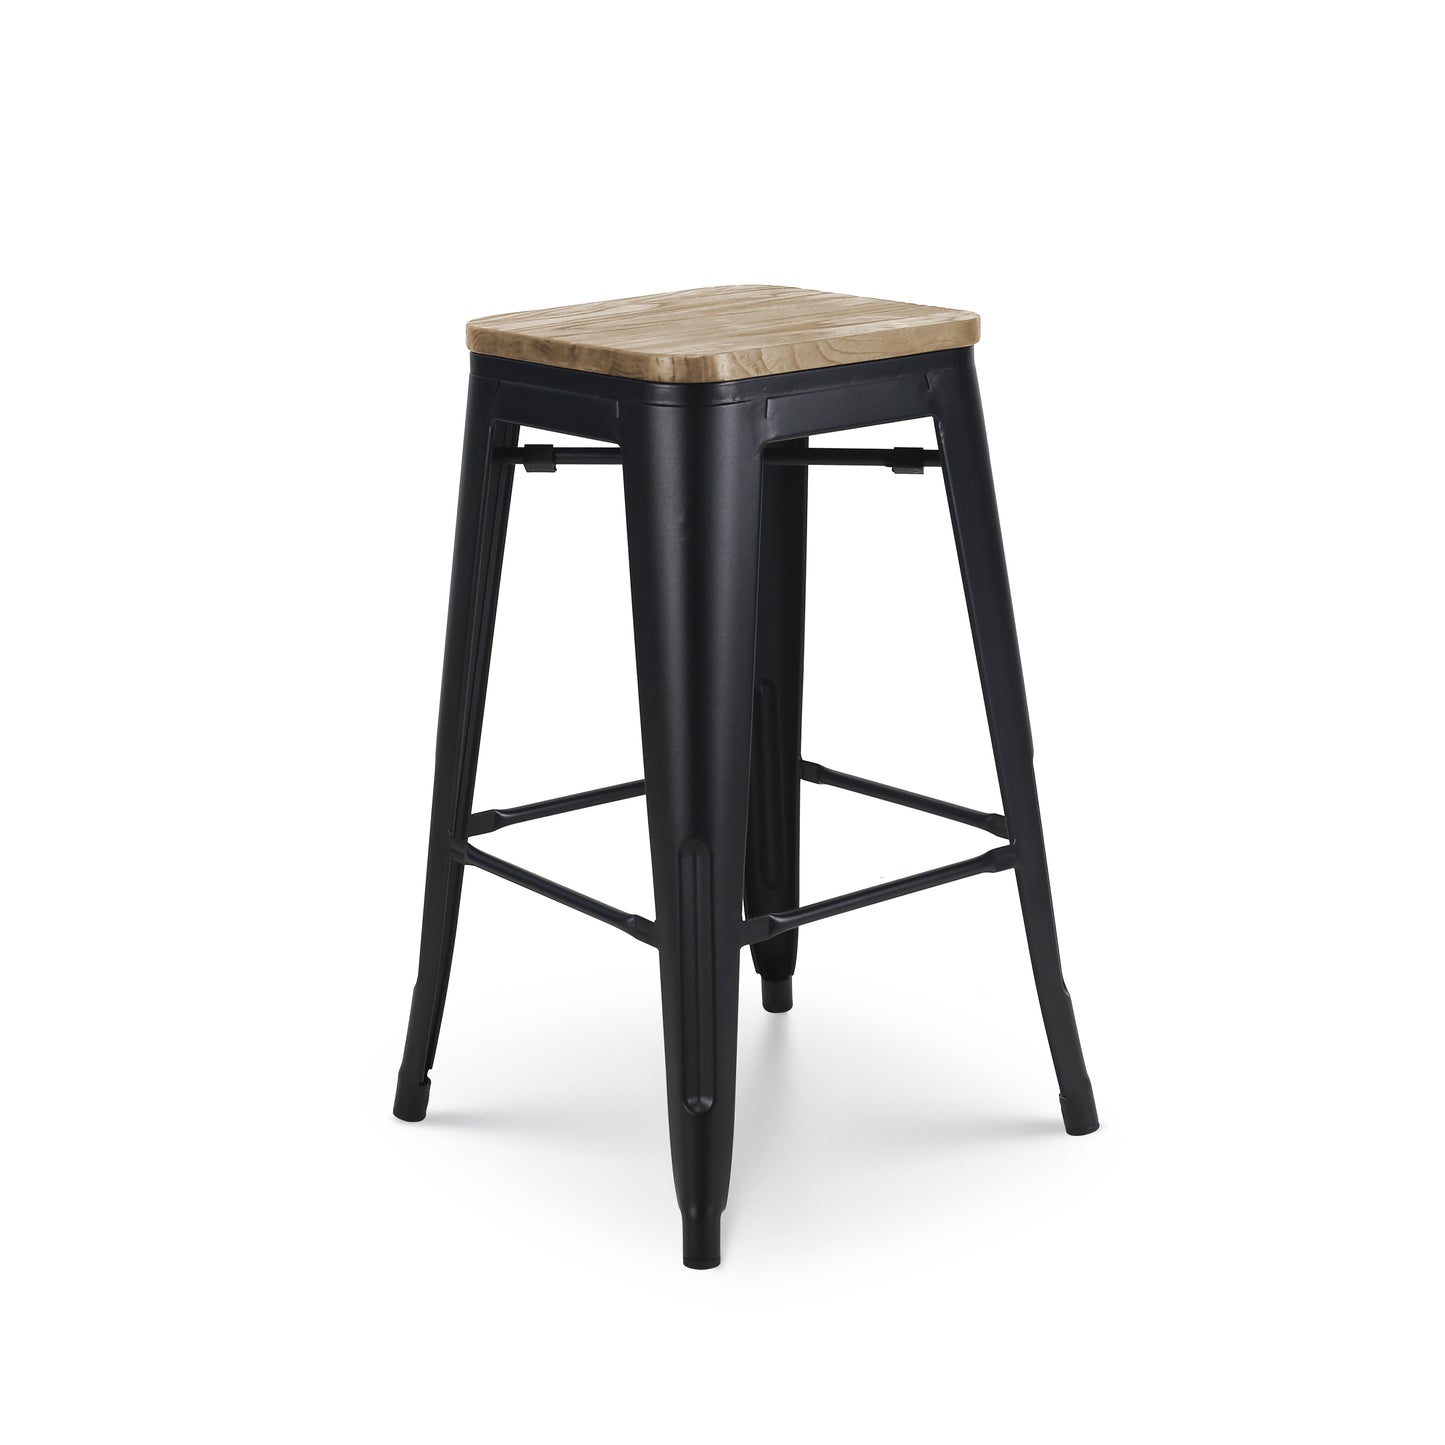 Tabouret de bar en métal noir mat style industriel et assise en bois clair - Hauteur 66 cm